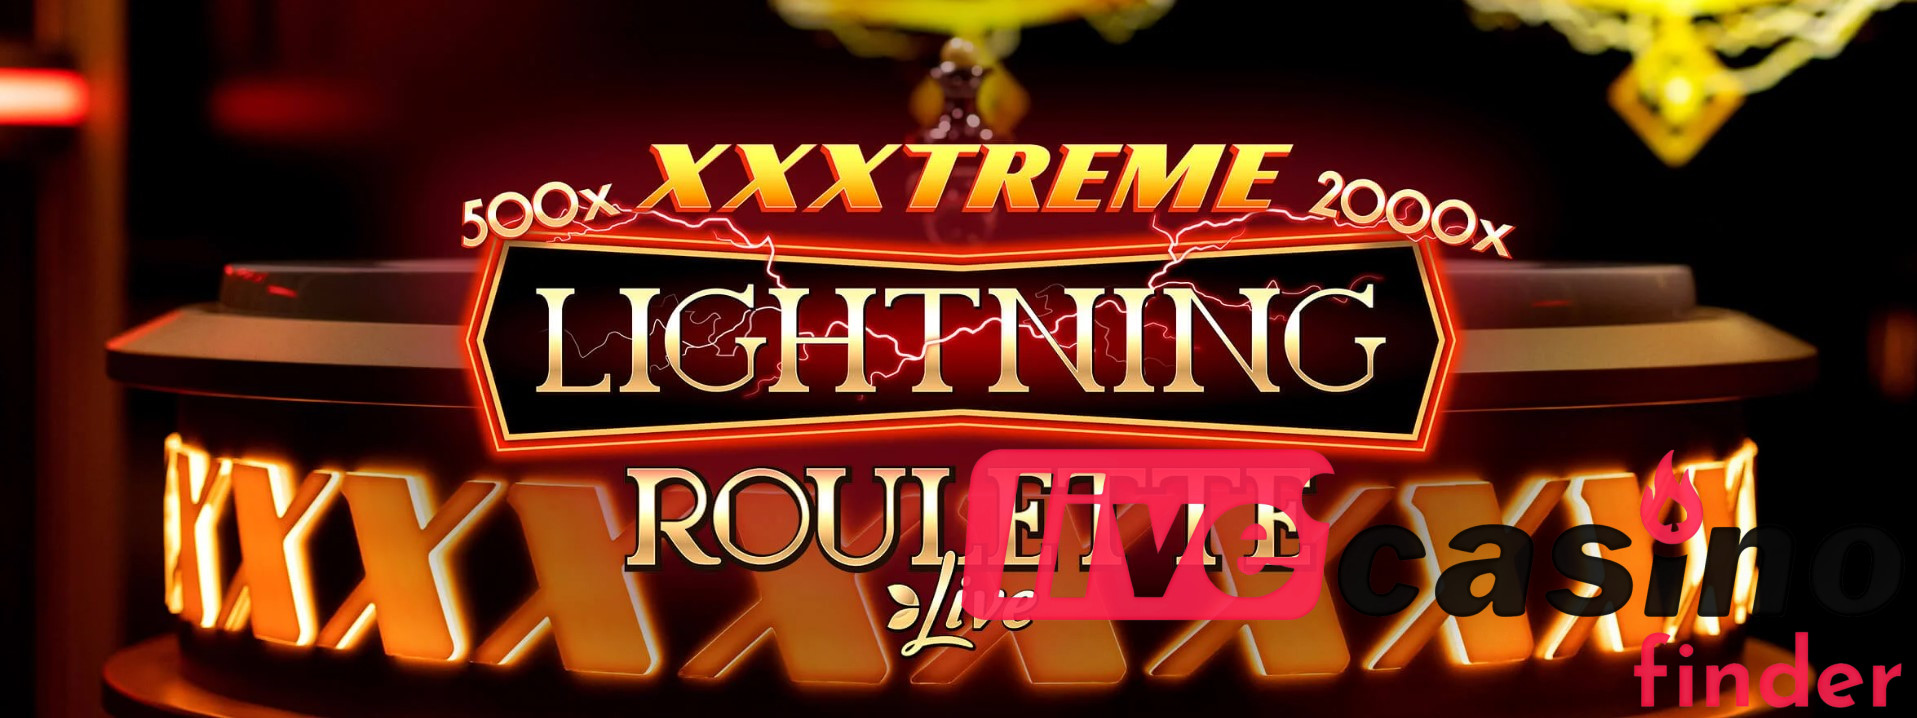 라이브 XXXTreme Lightning Roulette 게임.